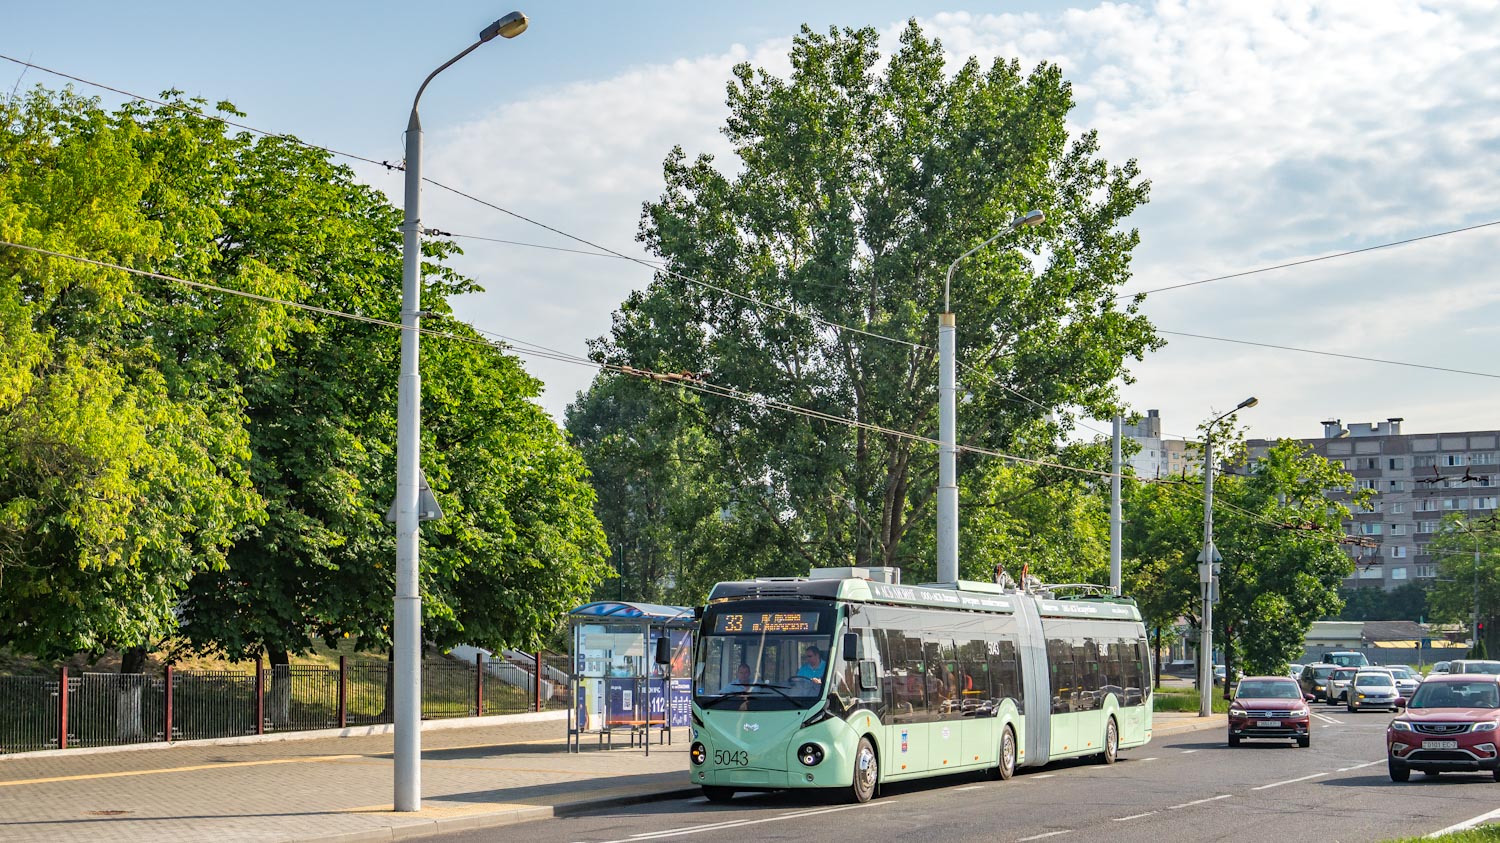 Kloubový parciální trolejbus na lince č. 33 na snímku z 24. 6. 2021. (foto: Artemiys_Gro)